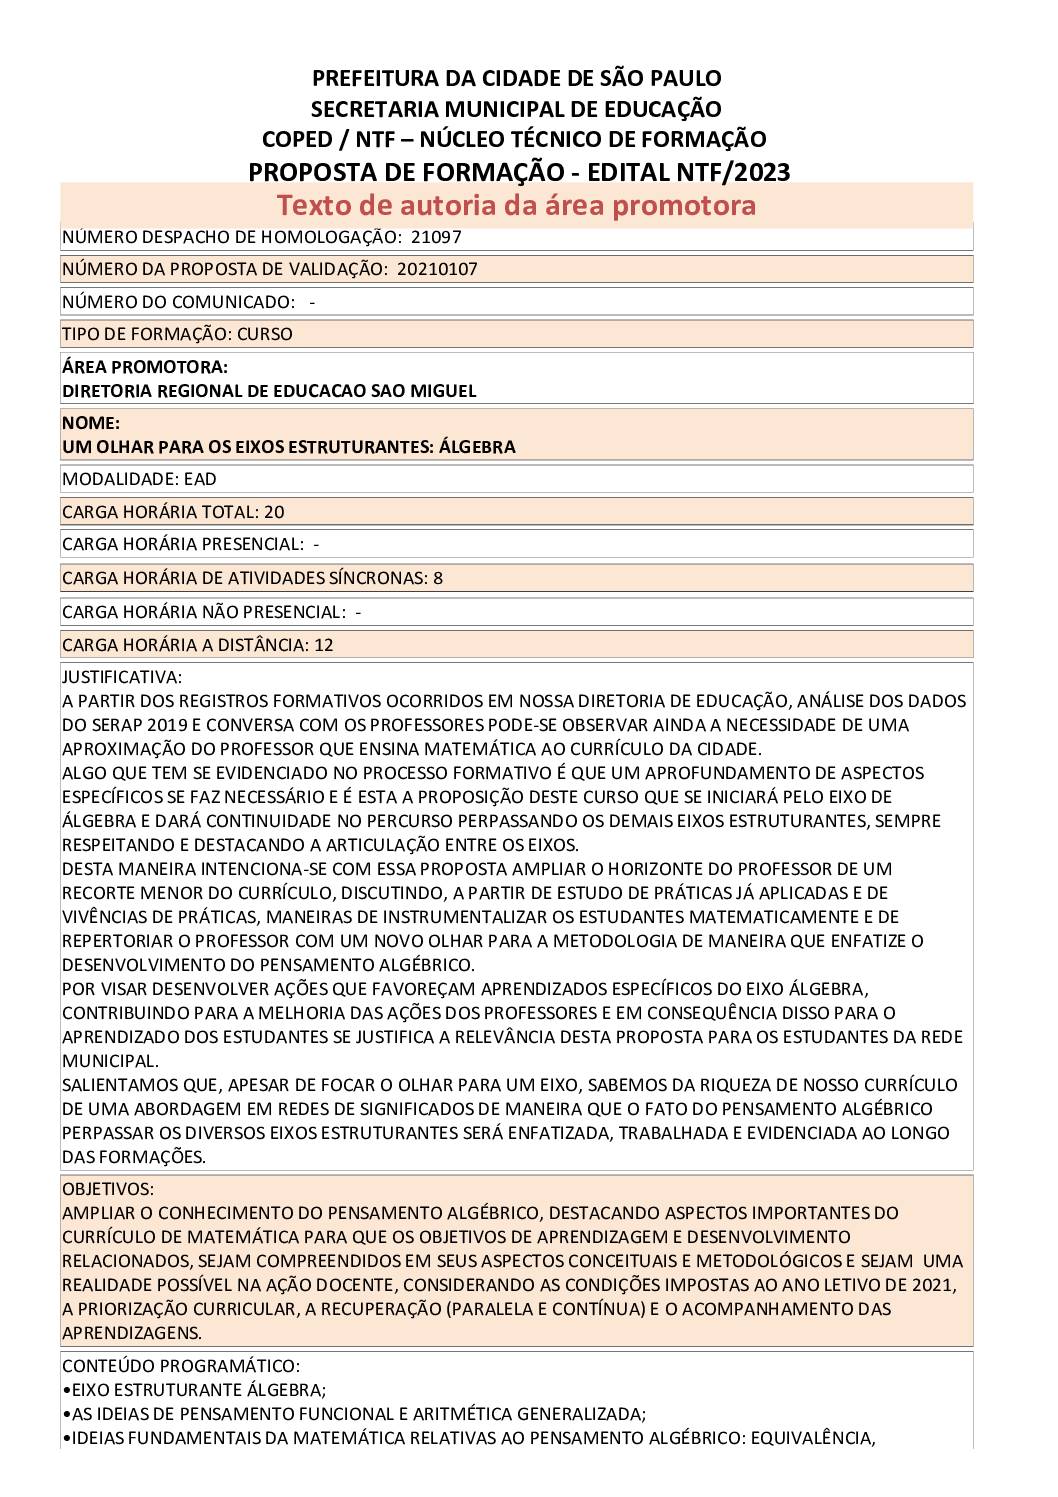 PDF com informações sobre o curso: UM OLHAR PARA OS EIXOS ESTRUTURANTES: ÁLGEBRA